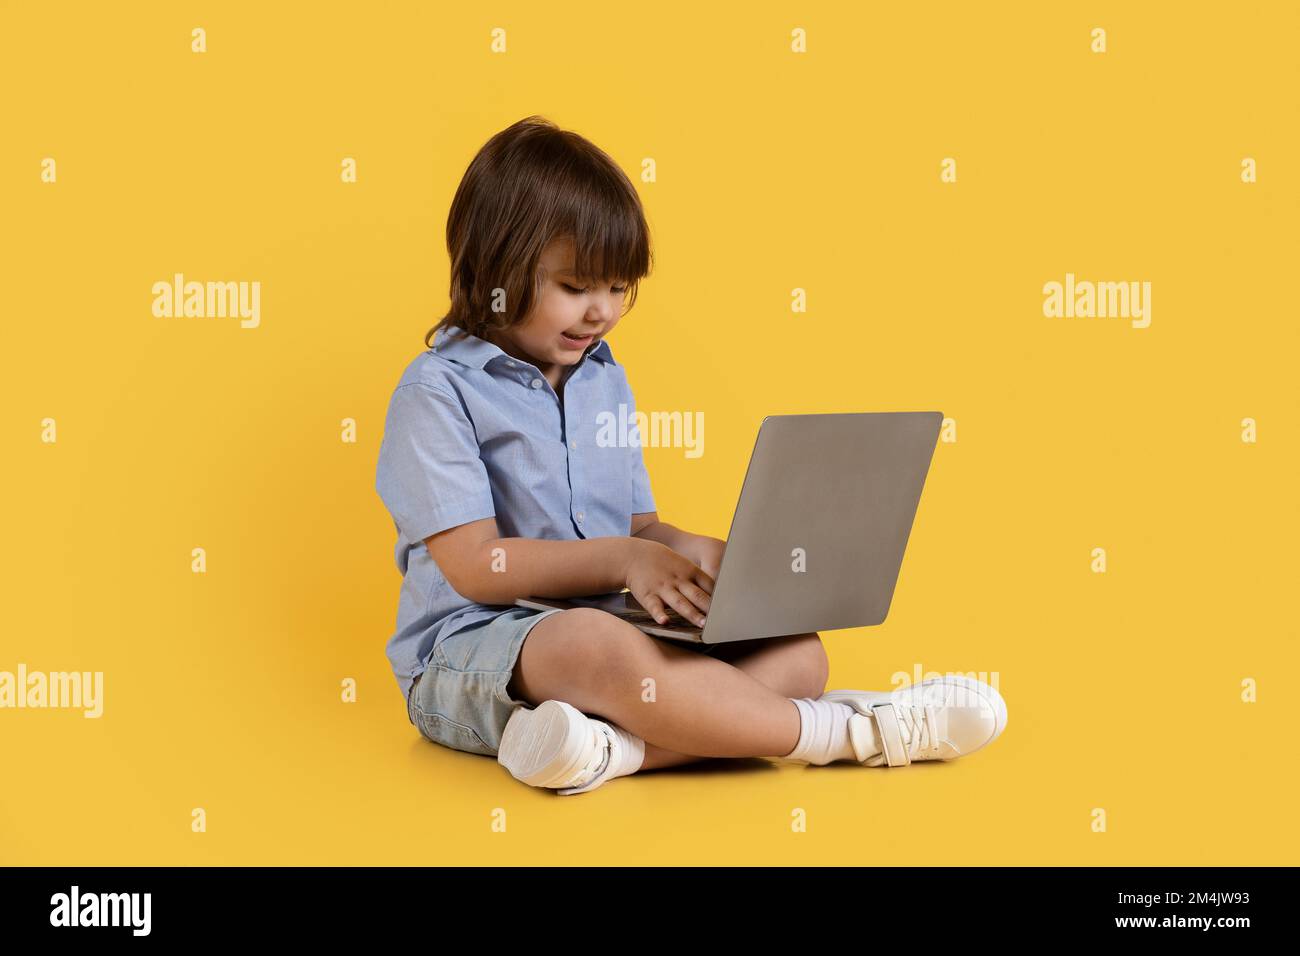 Adorable niño pequeño escribiendo en la computadora portátil, jugando a desarrollar el juego, sentado en el piso, fondo de estudio naranja Foto de stock